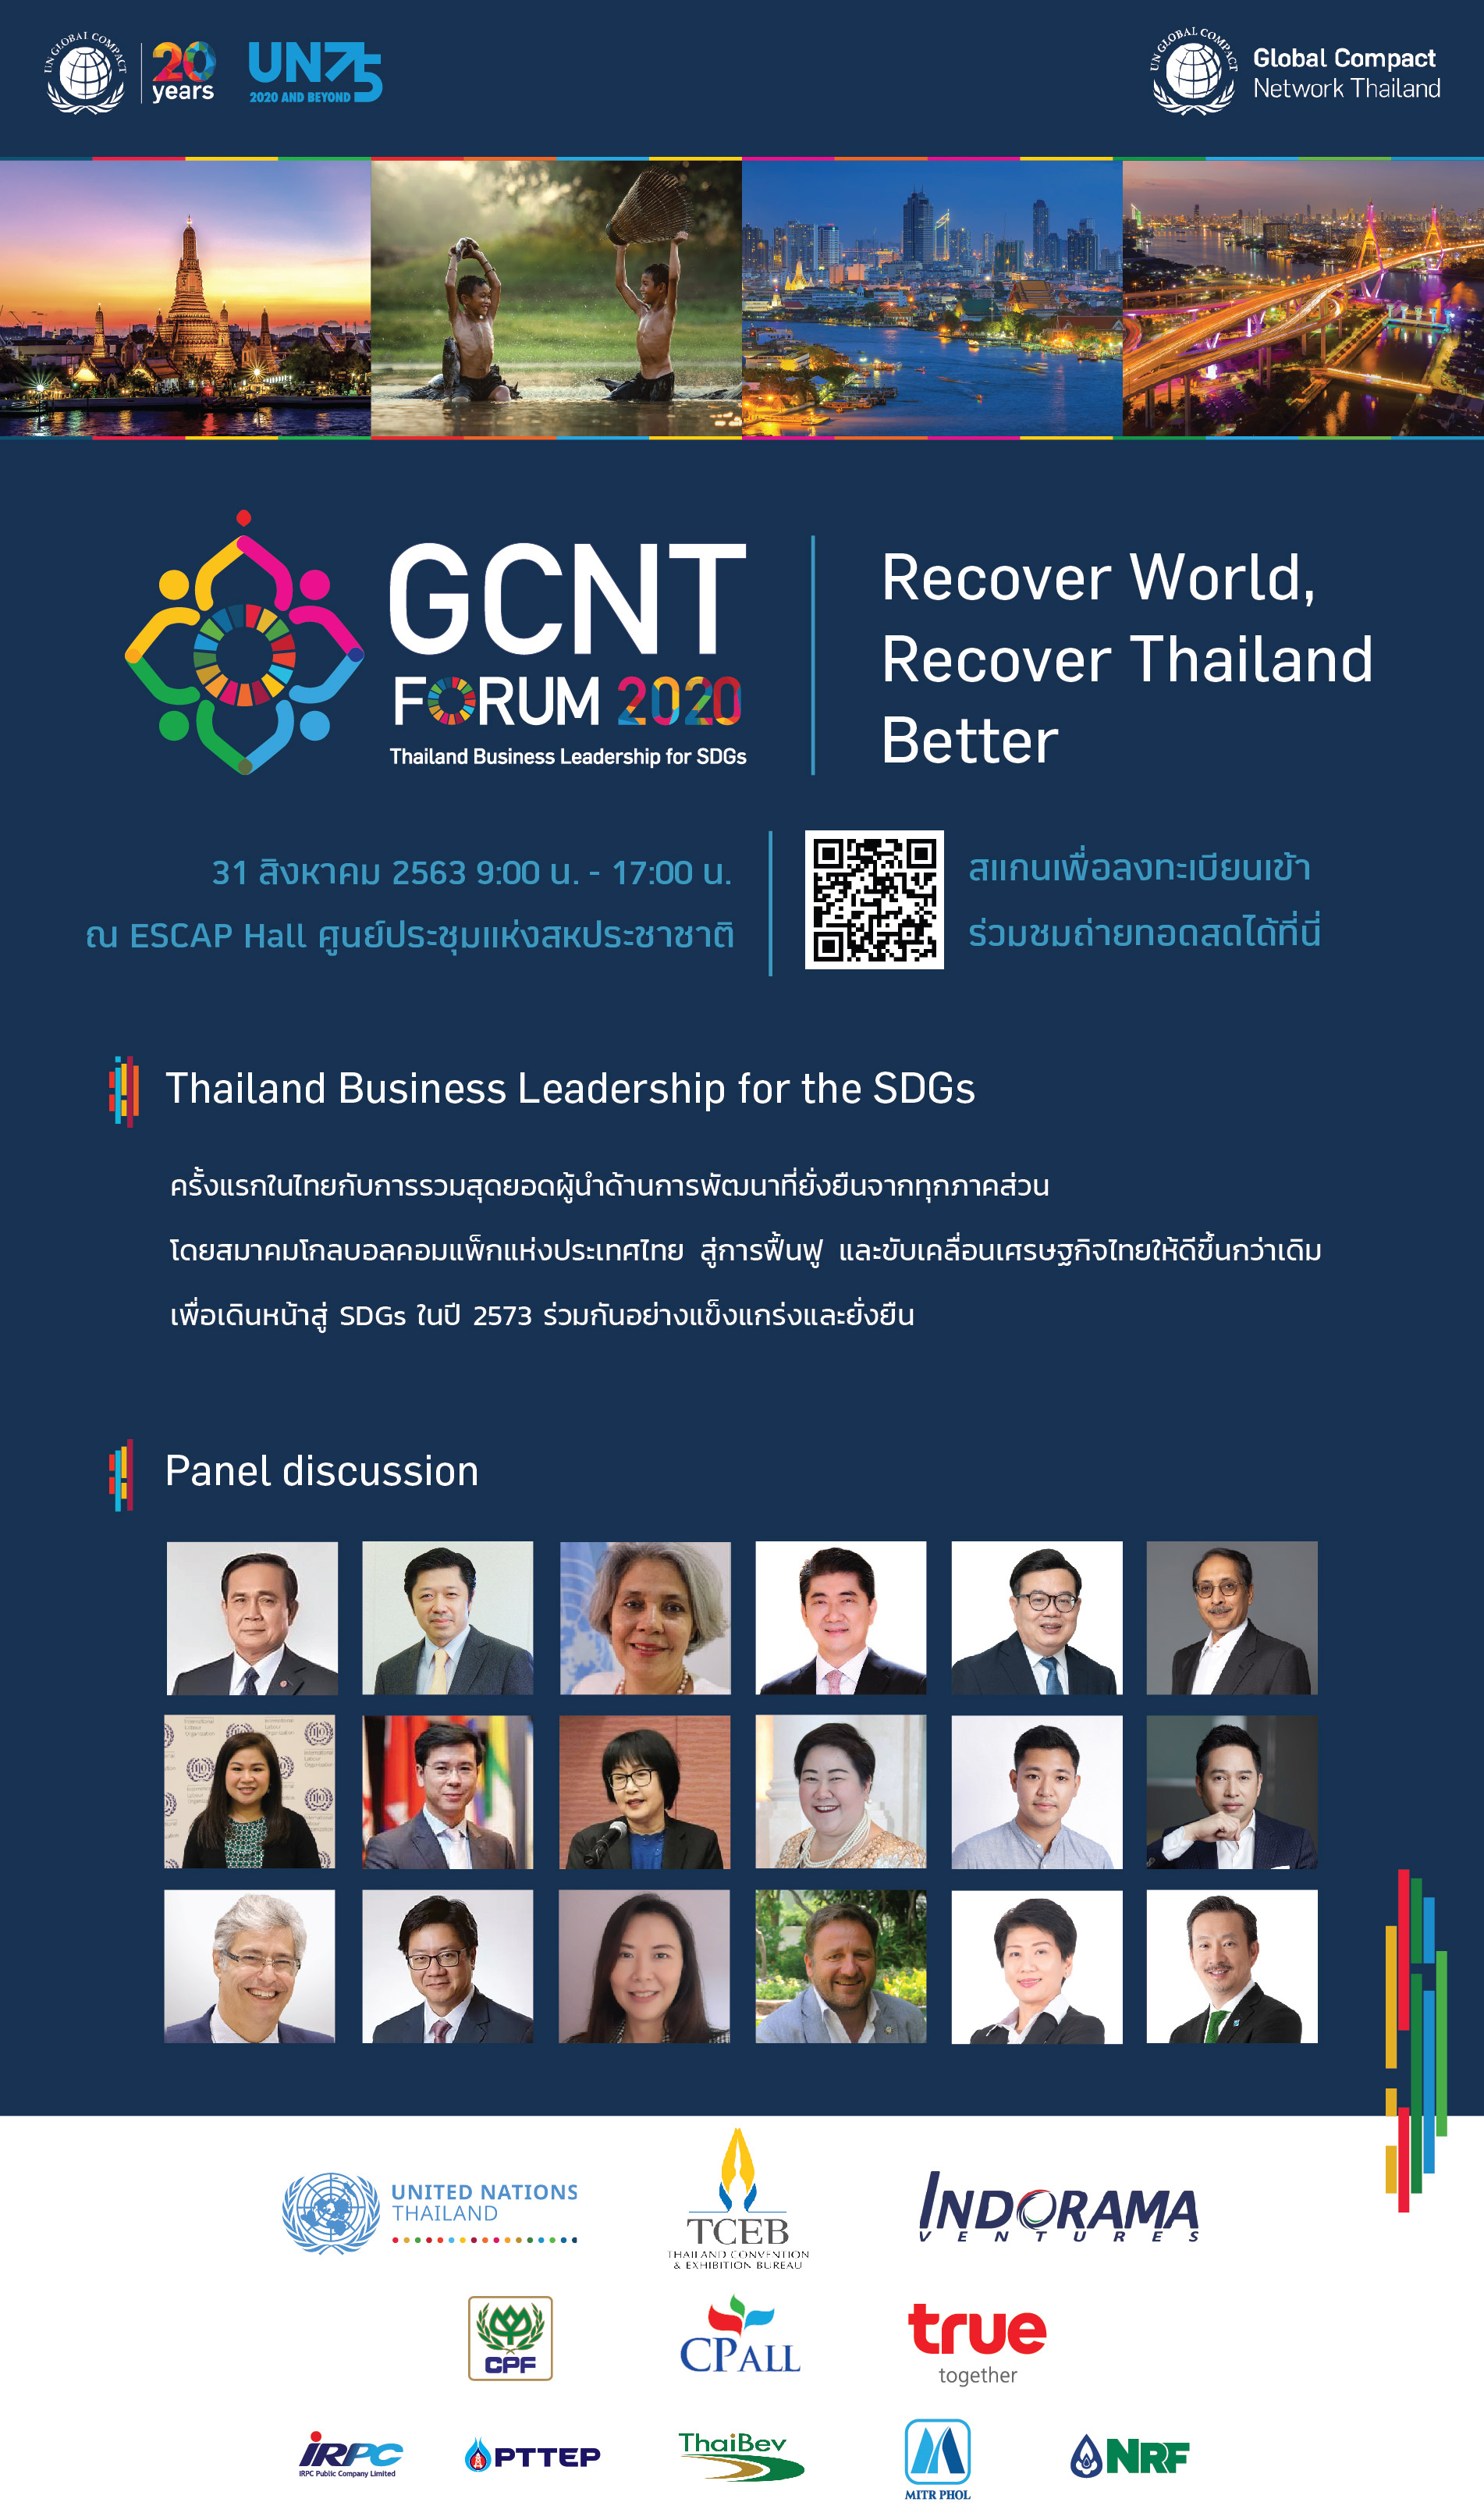 โกลบอลคอมแพ็กประเทศไทย ประกาศจัดงาน GCNT FORUM 2020: Thailand Business Leadership for SDGs เวทีรวมสุดยอดผู้นำด้านการพัฒนาที่ยิ่งใหญ่ของไทย